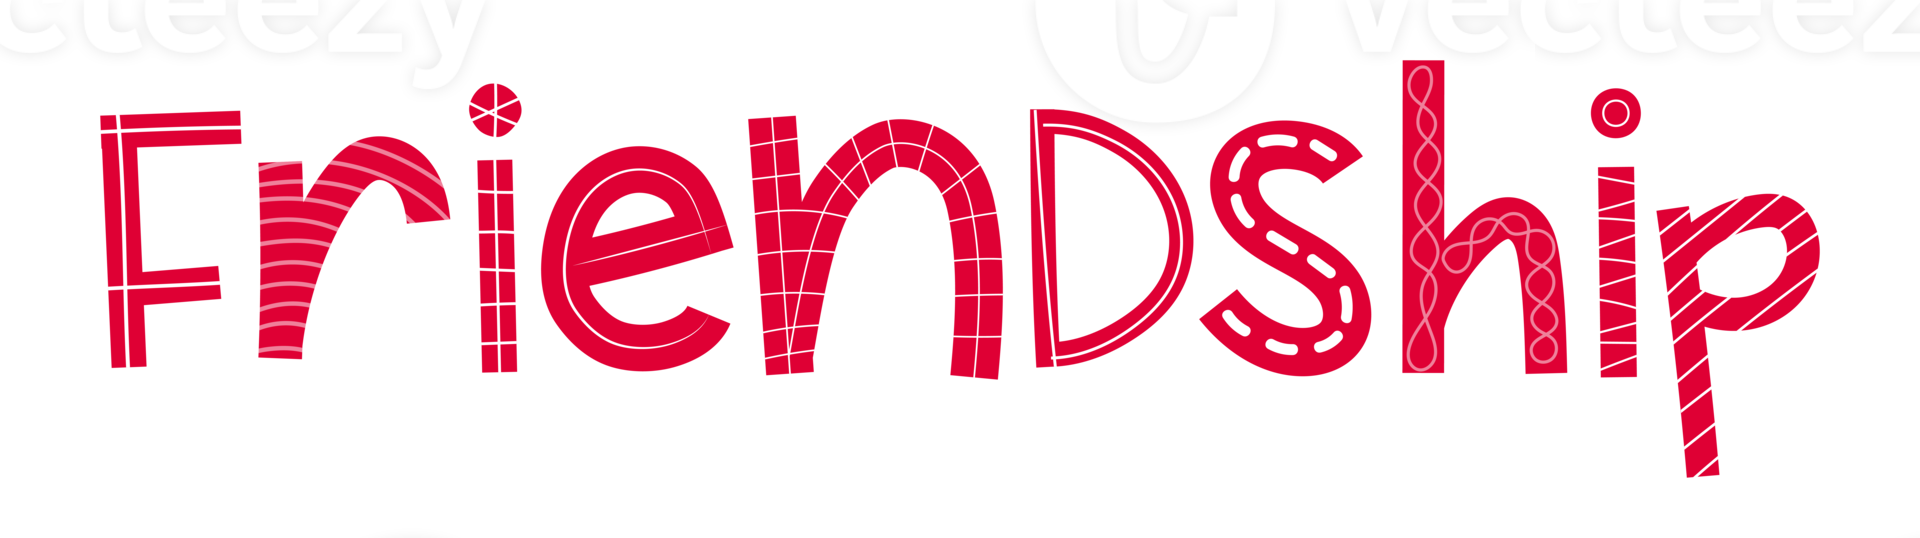 Palabra de amistad roja cómica con detalles en blanco. perfecto para pegatinas y personalizaciones. png